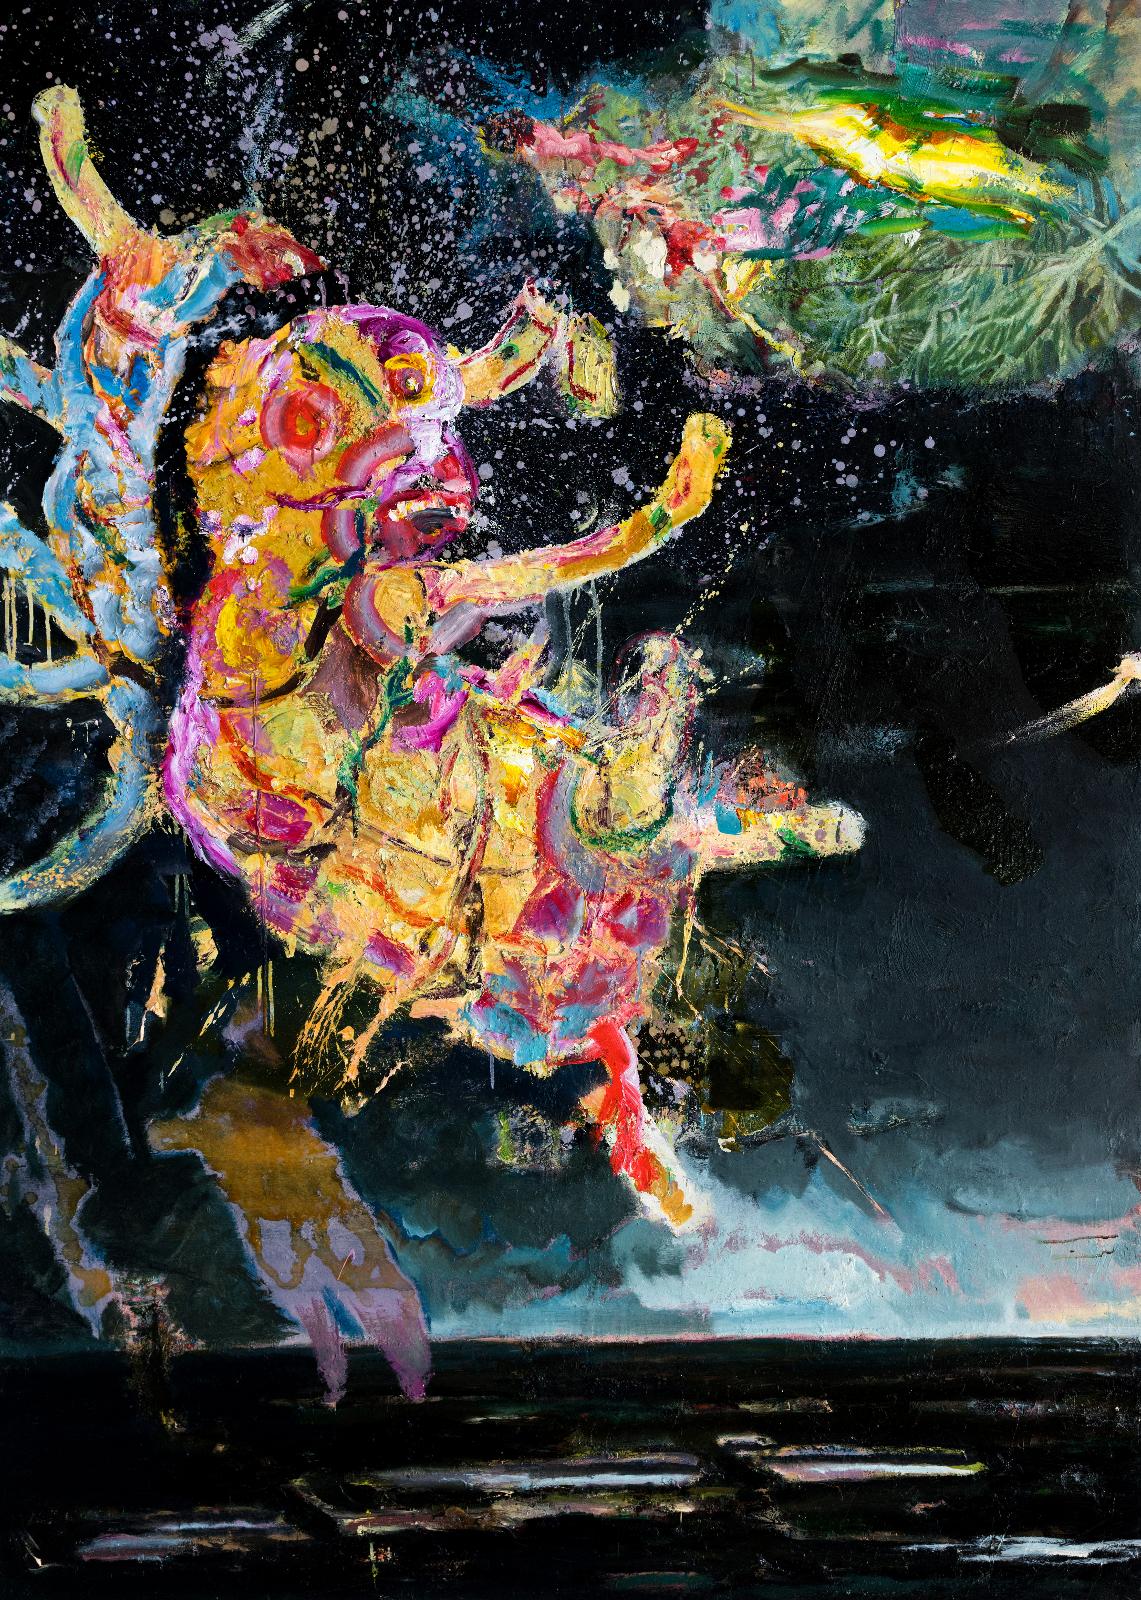 Werner Liebmann, Blitzlicht, 2020, Öl auf Leinwand, 185 cm x 135 cm, Preis auf Anfrage